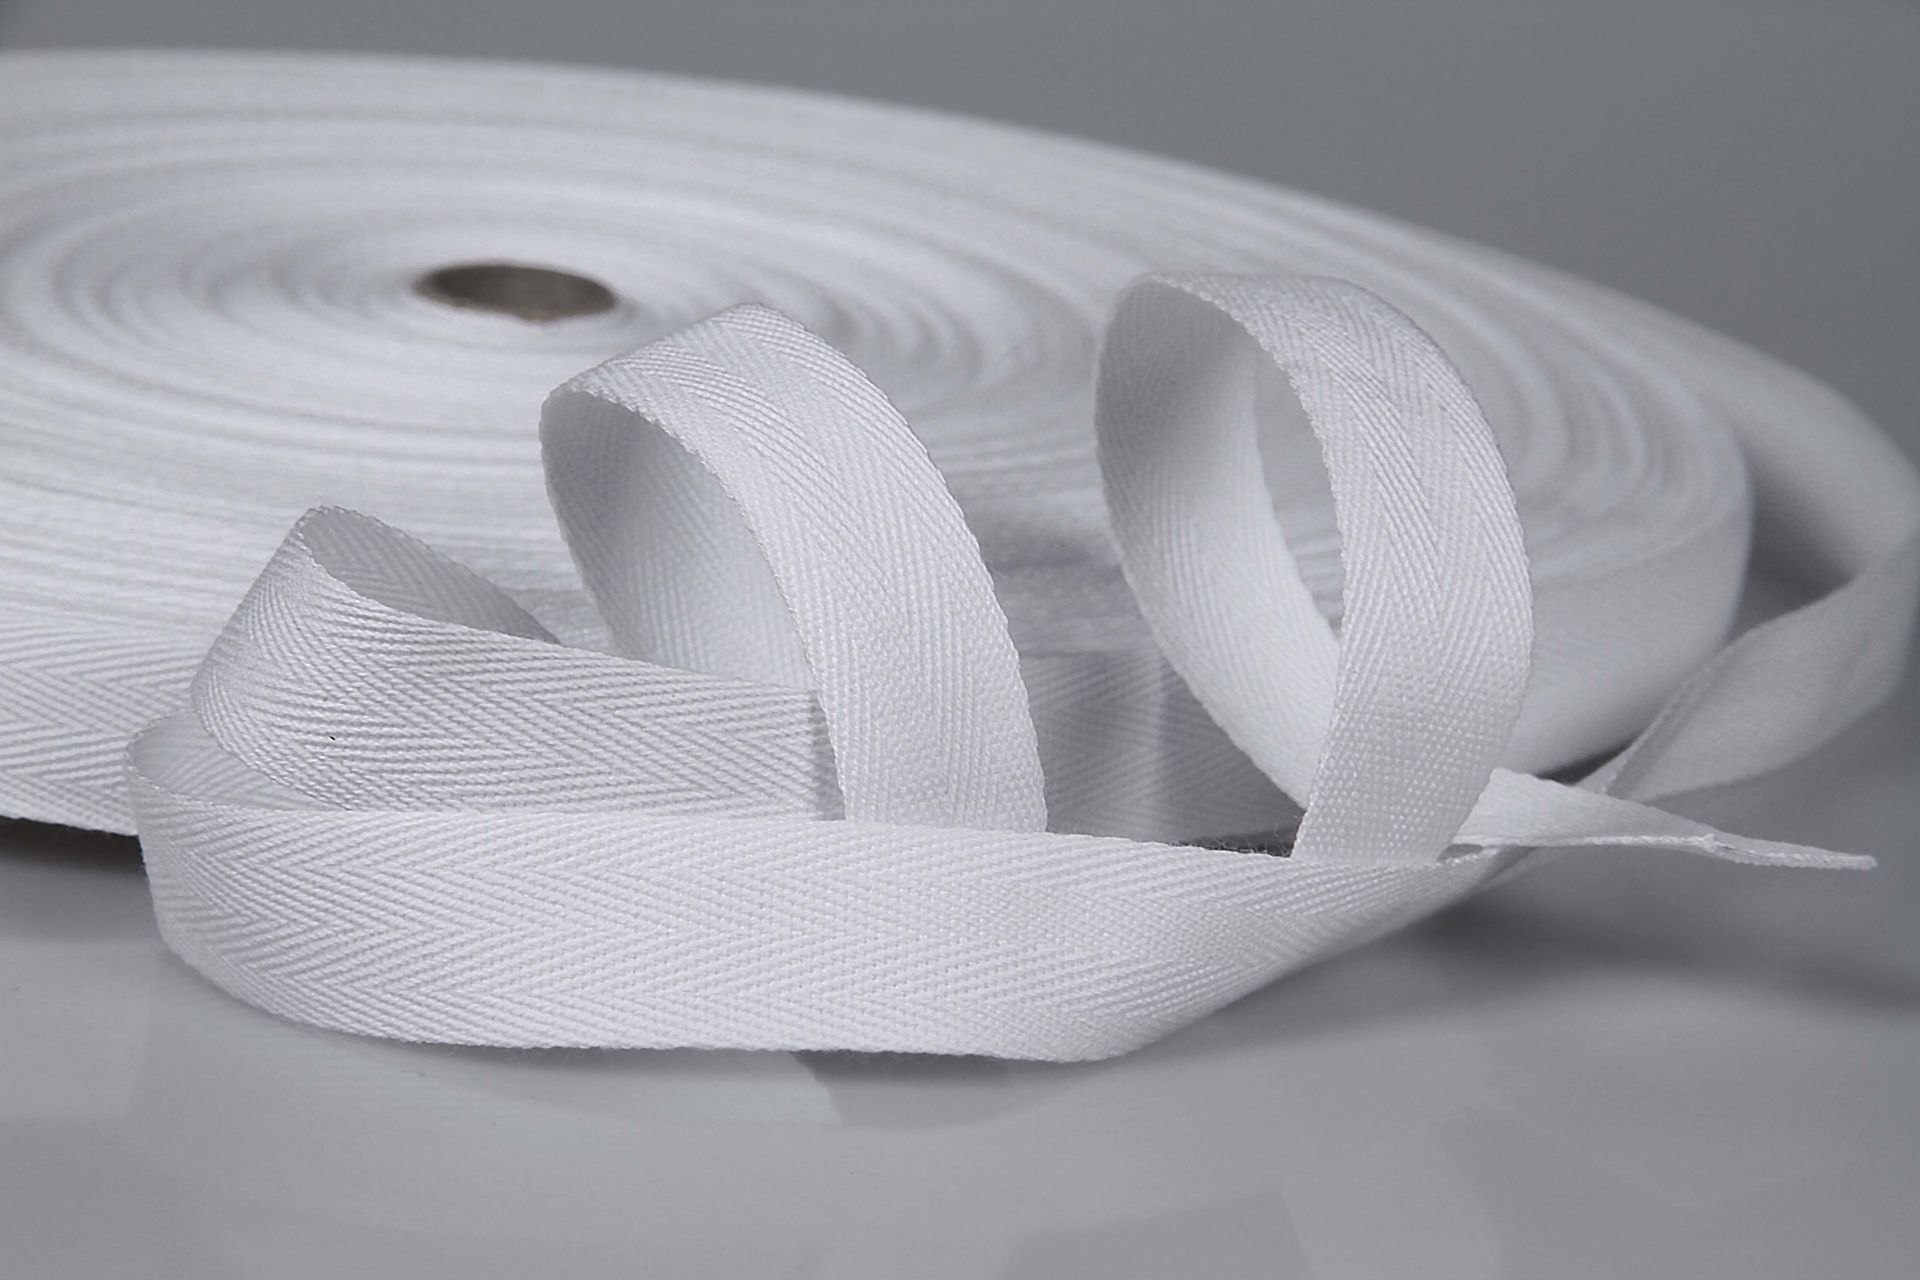 Baumwollband  -  Köperband  -  Einfassband  -  100 m Rollenware  -  20 mm Breite  -  Weiß  -  0,3 mm Stärke